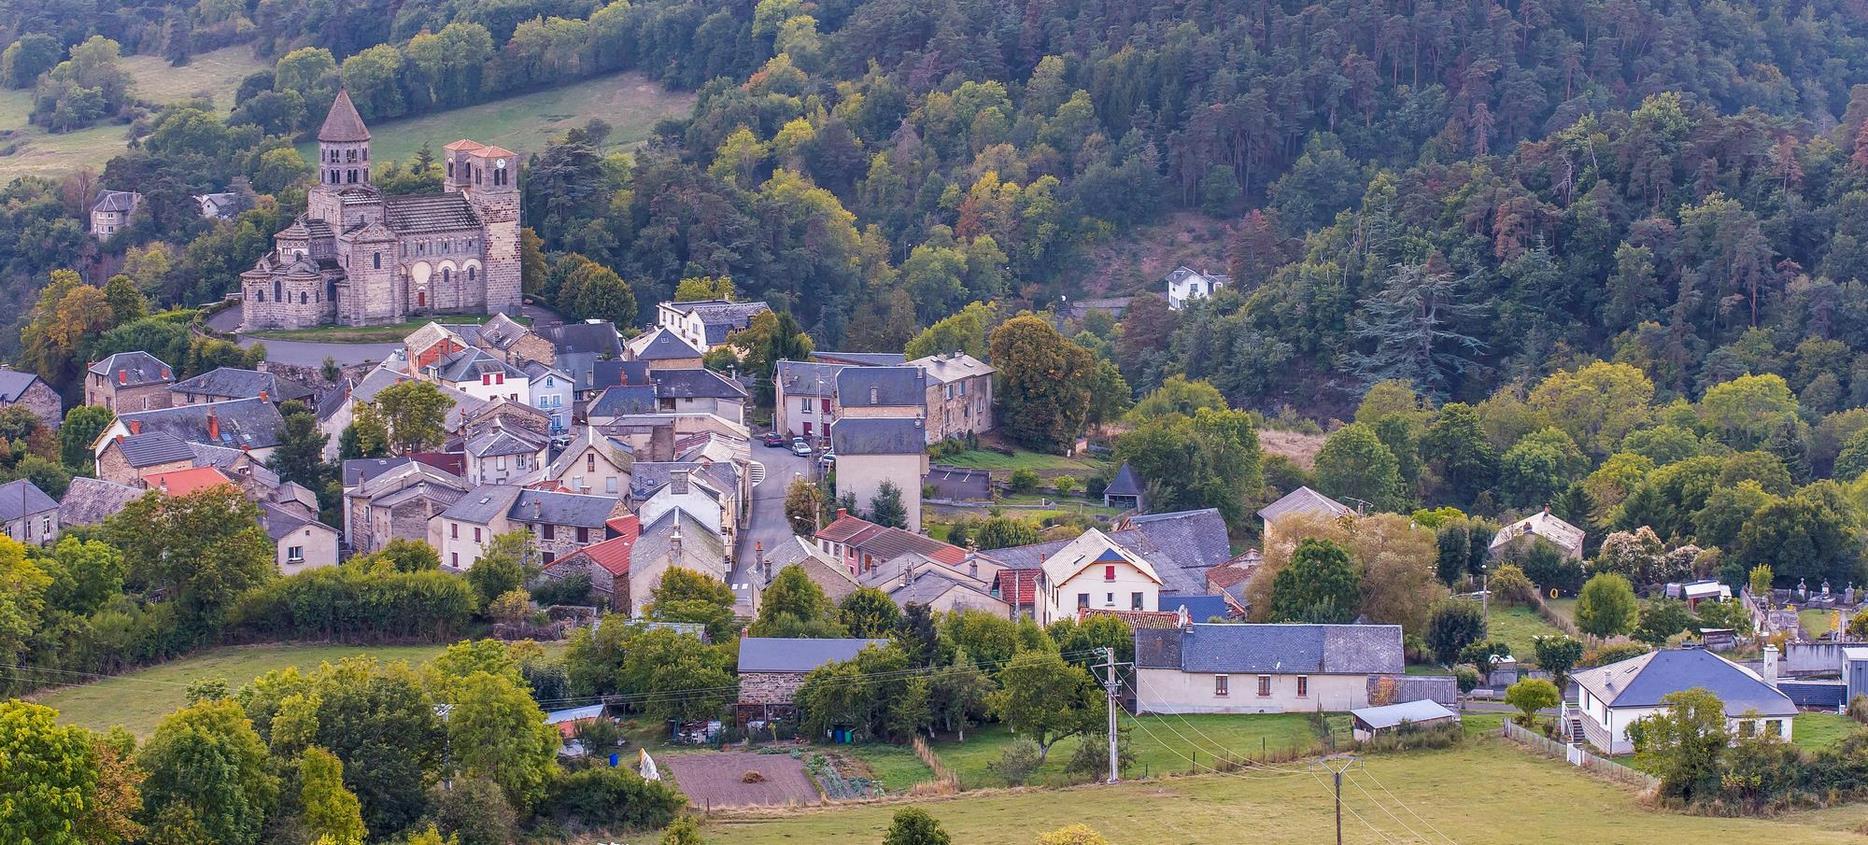 Saint Nectaire - Vue sur le Village de Saint Nectaire en Auvergne